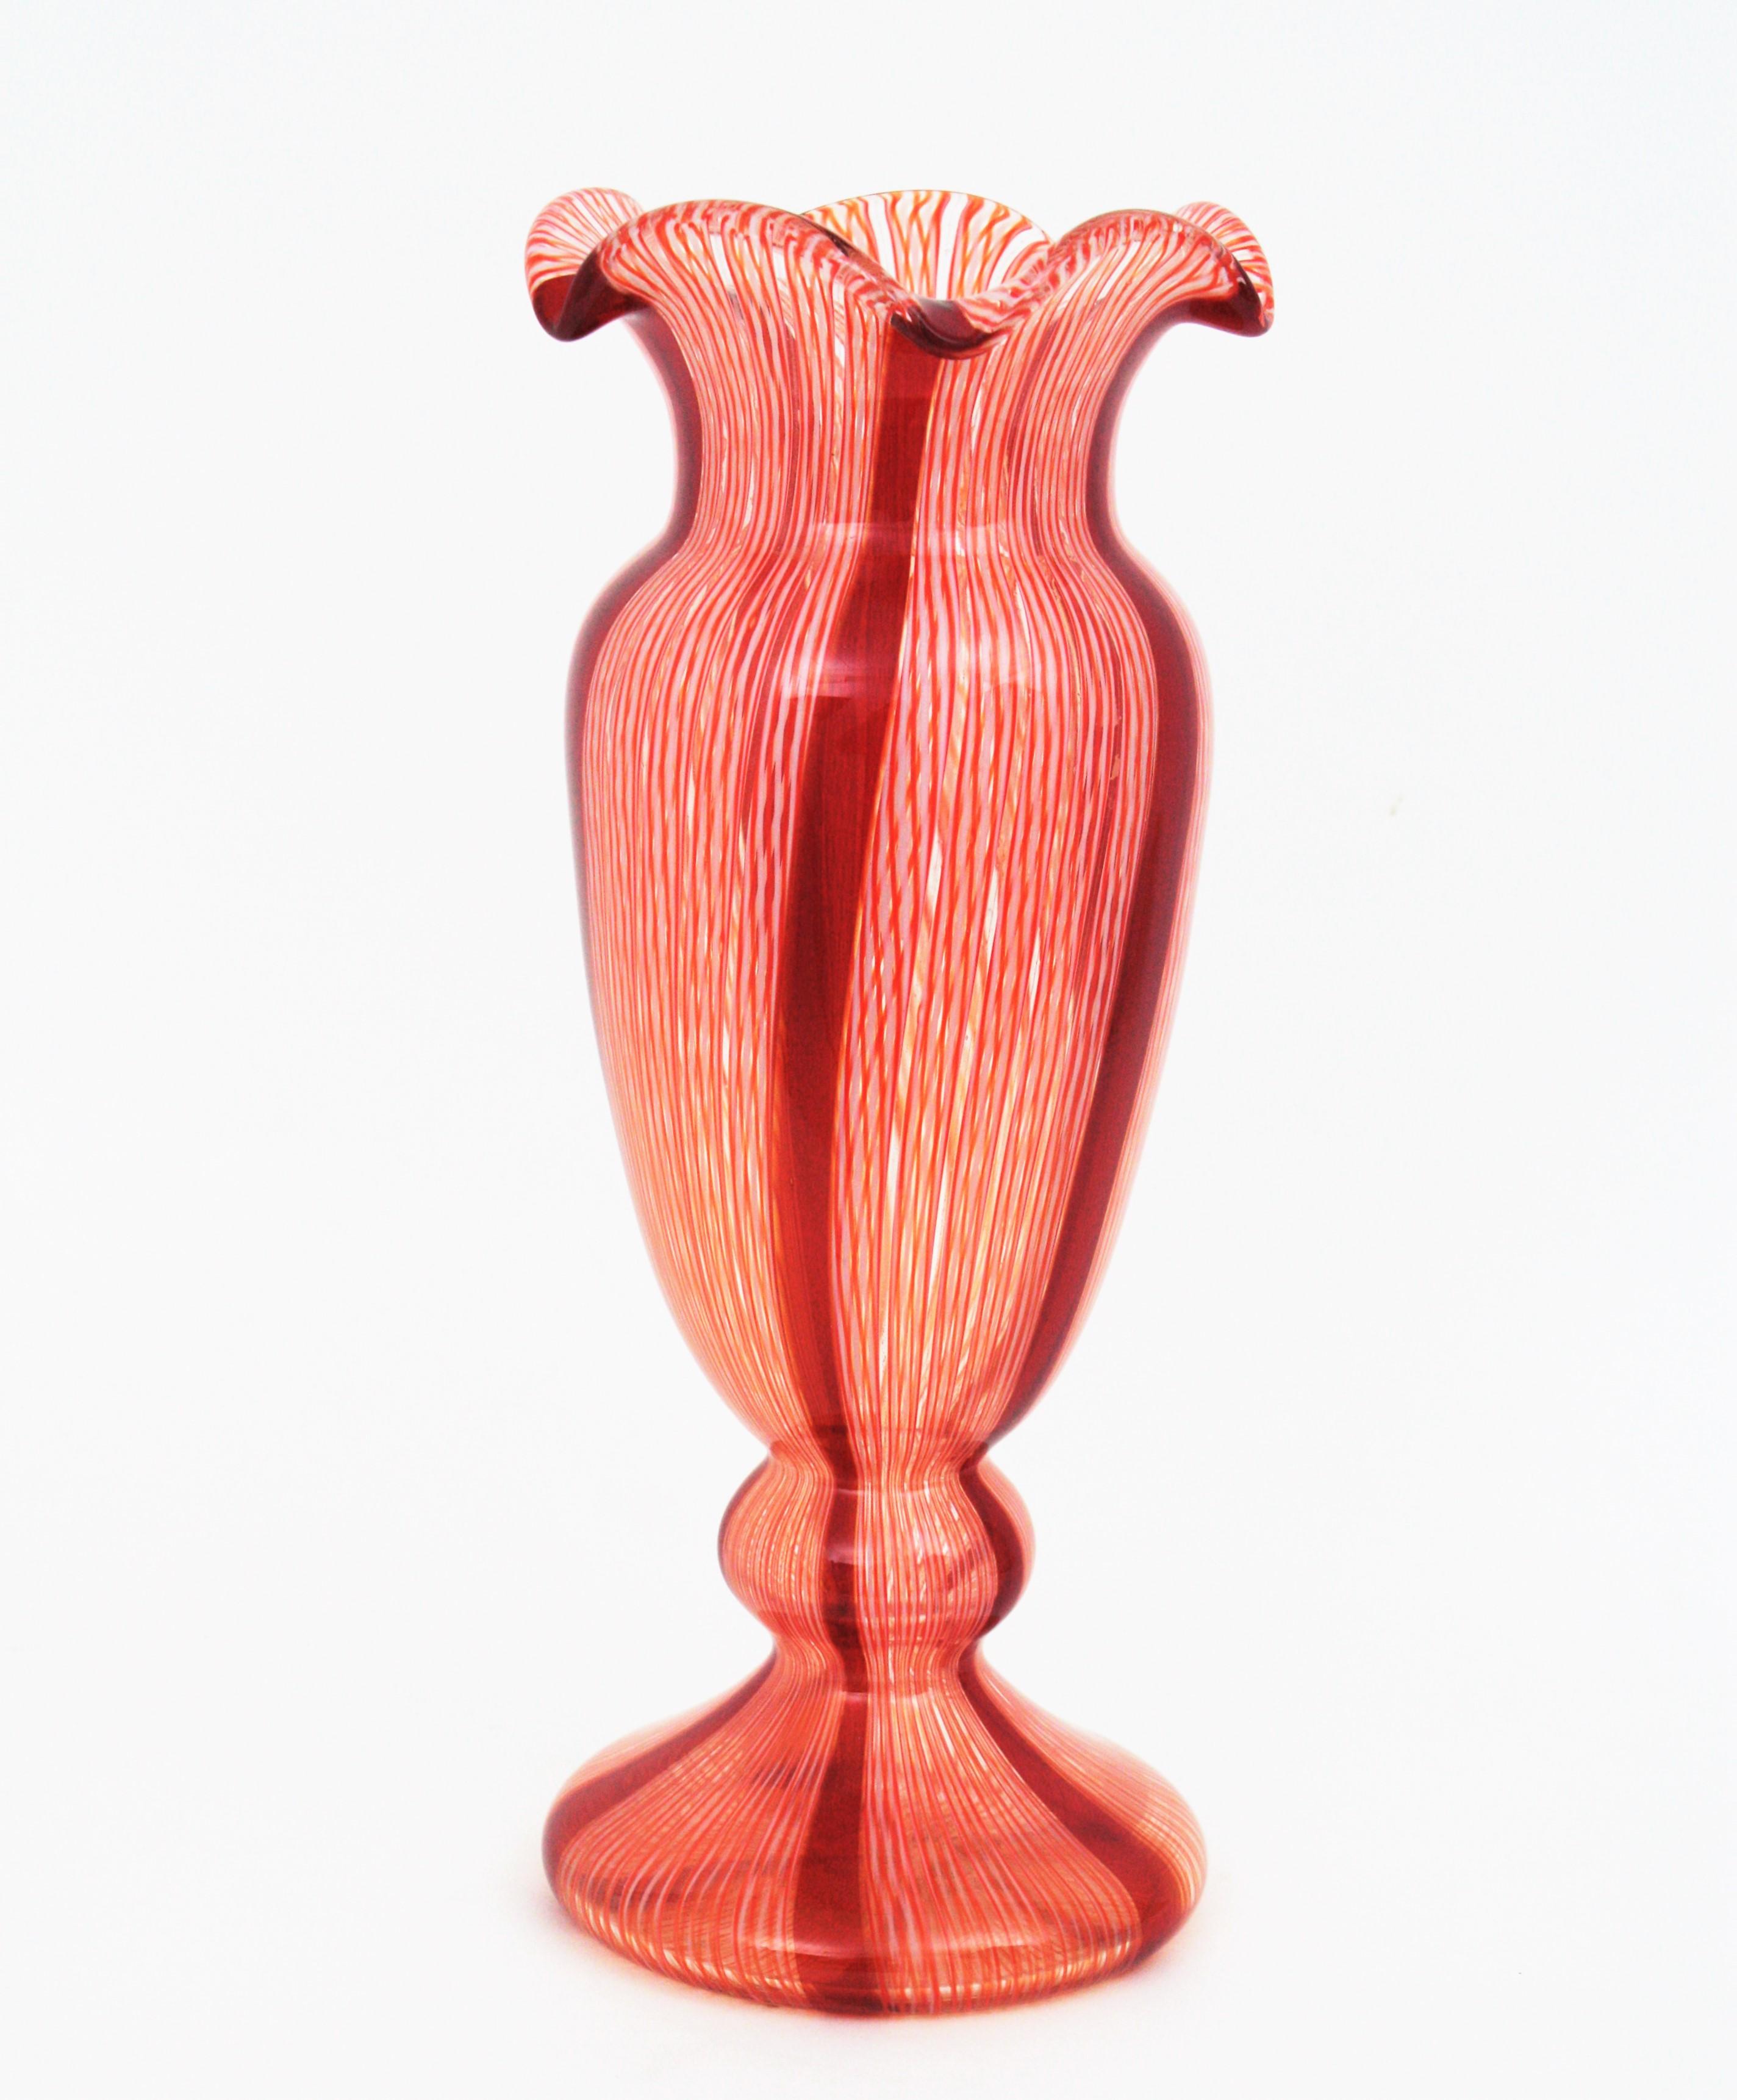 Skulpturale Vase aus geblasenem Zanfirico-Murano-Glas des frühen 20. Jahrhunderts mit roten und weißen Bändern.  Wird Fratelli Toso zugeschrieben. 
Hergestellt mit der Caneworking-Glasbläsertechnik in rubinrotem und weißem Glas mit gelben Akzenten.